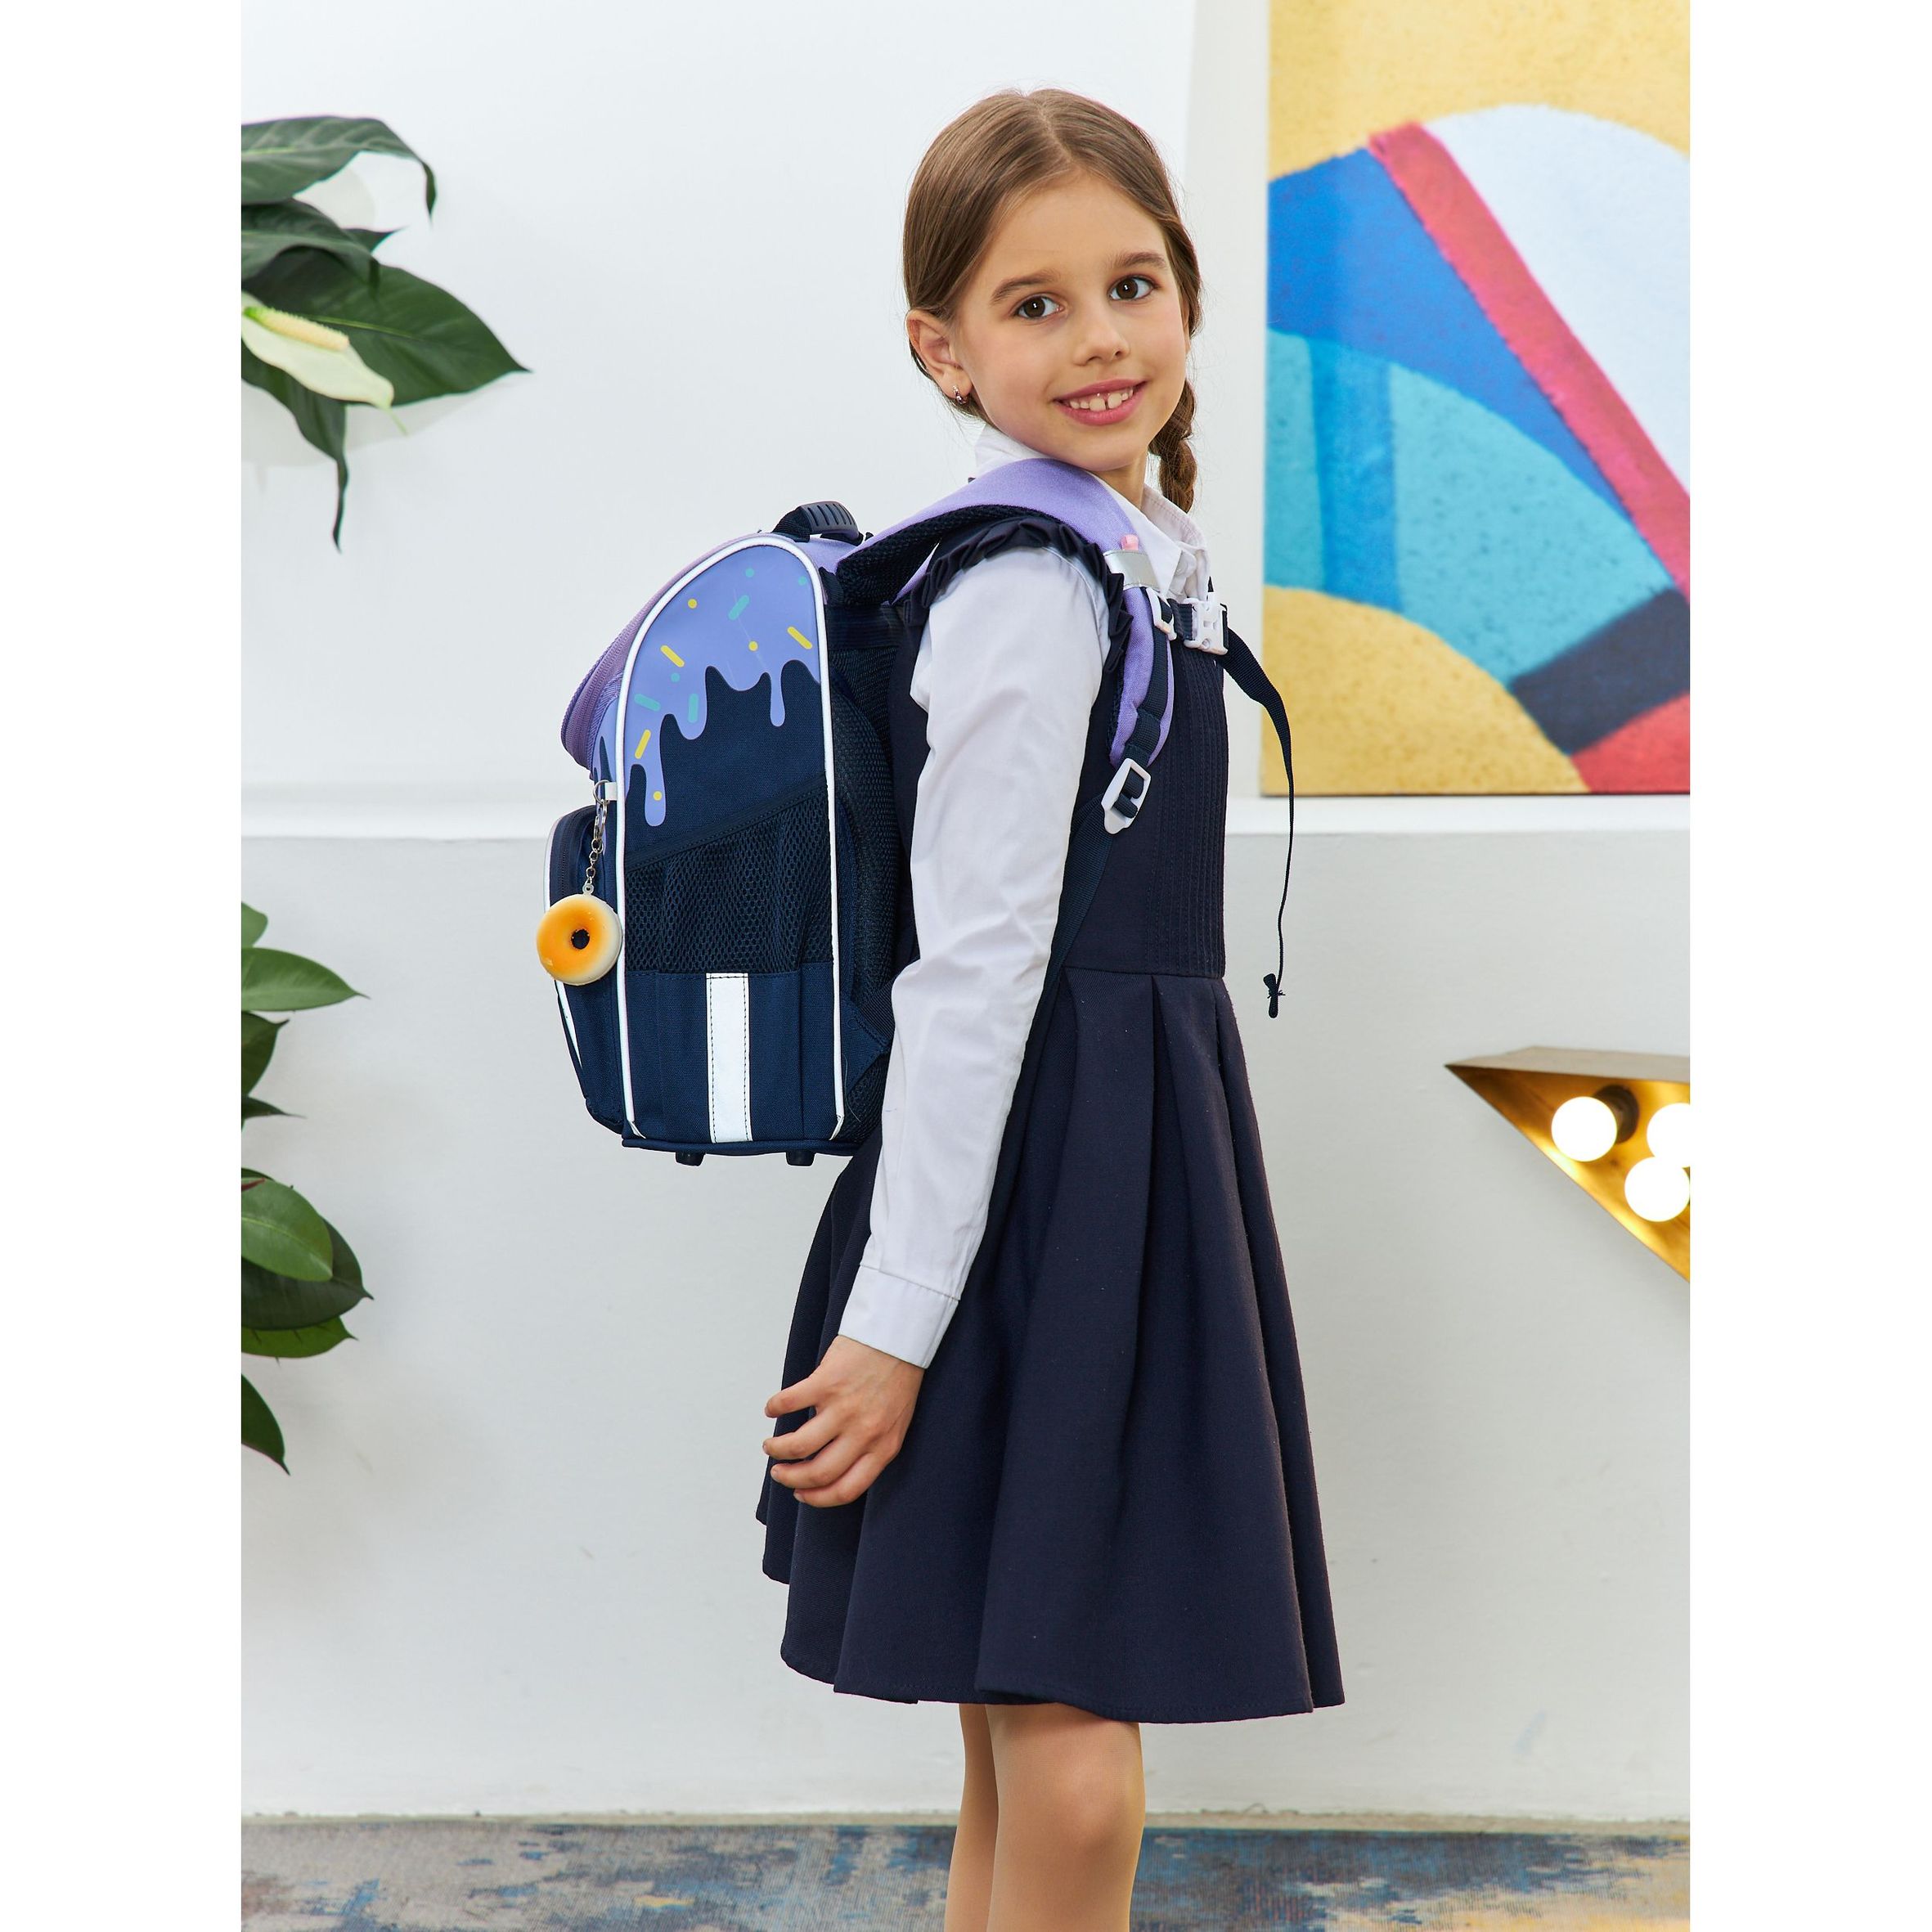 RAm-384-3 Рюкзак школьный с мешком